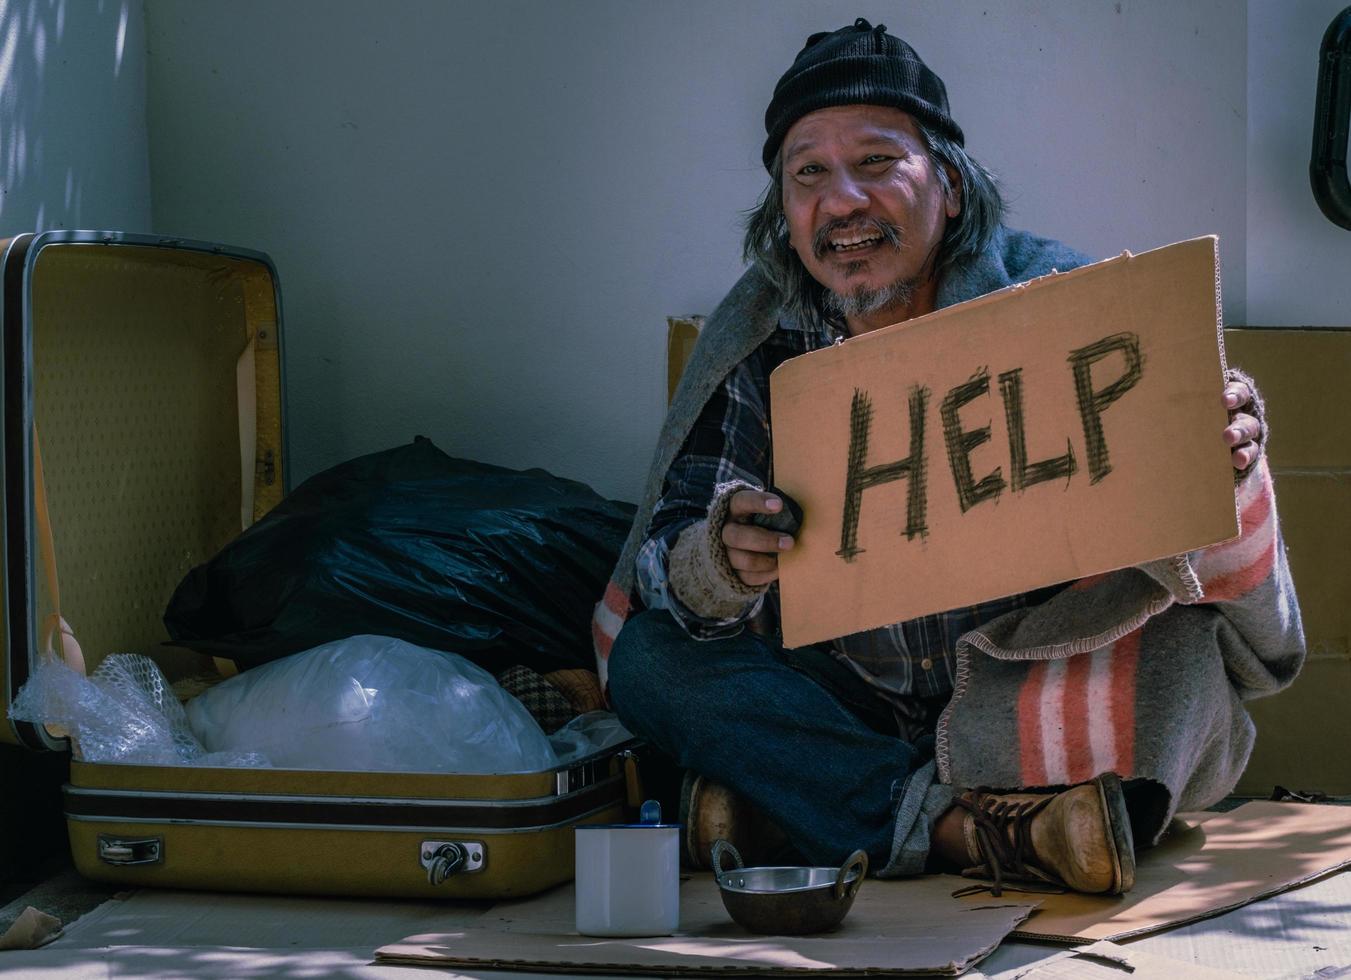 il senzatetto chiede aiuto e condivisione. molte persone affrontano senza lavoro e senza fissa dimora dopo l'epidemia di covid 19. quest'uomo deve vivere vicino al marciapiede e chiede aiuto.. foto